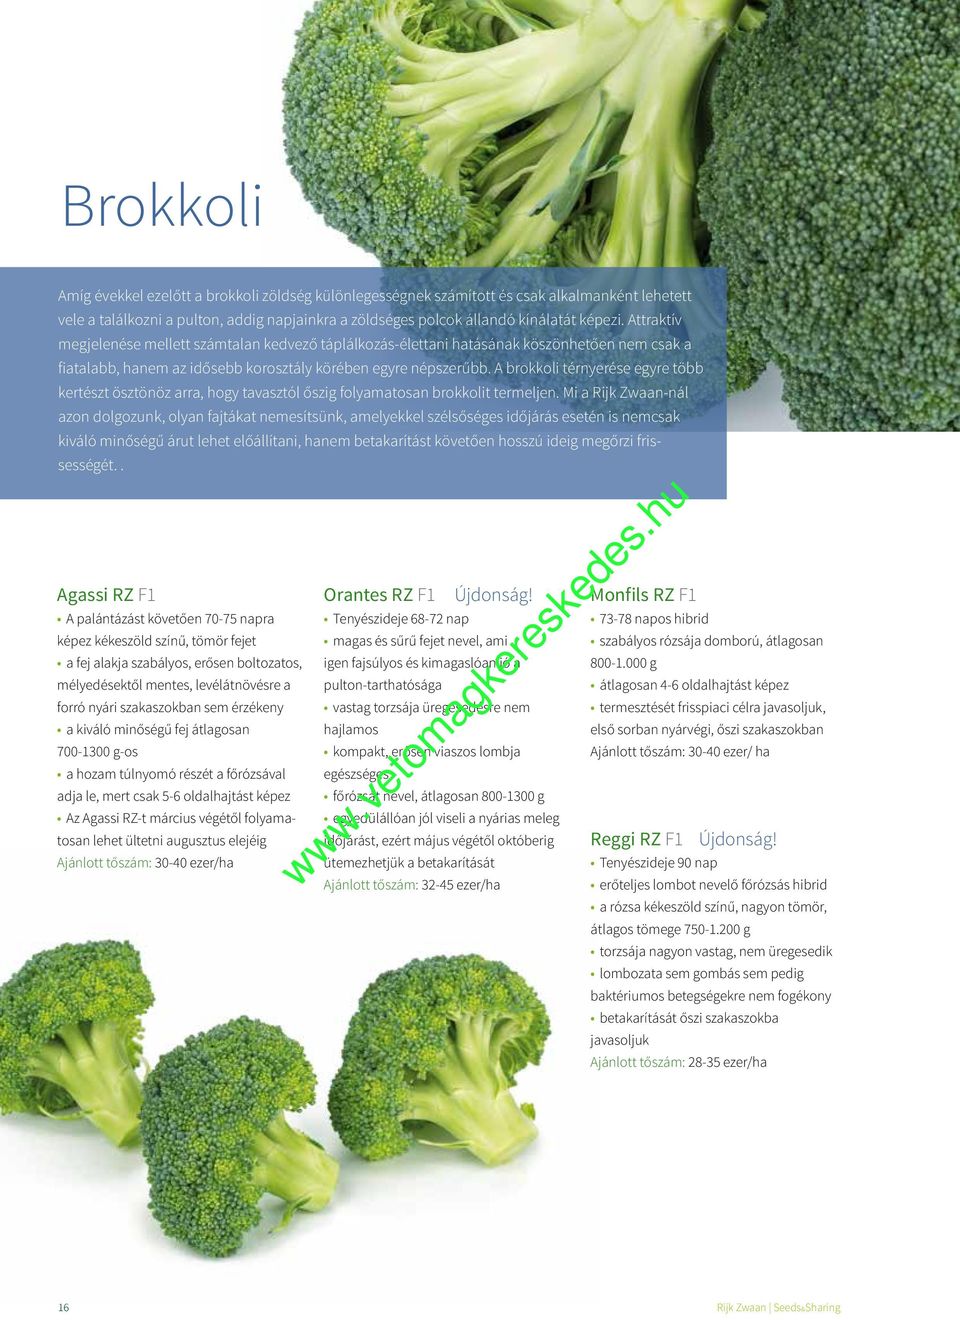 A brokkoli térnyerése egyre több kertészt ösztönöz arra, hogy tavasztól őszig folyamatosan brokkolit termeljen.